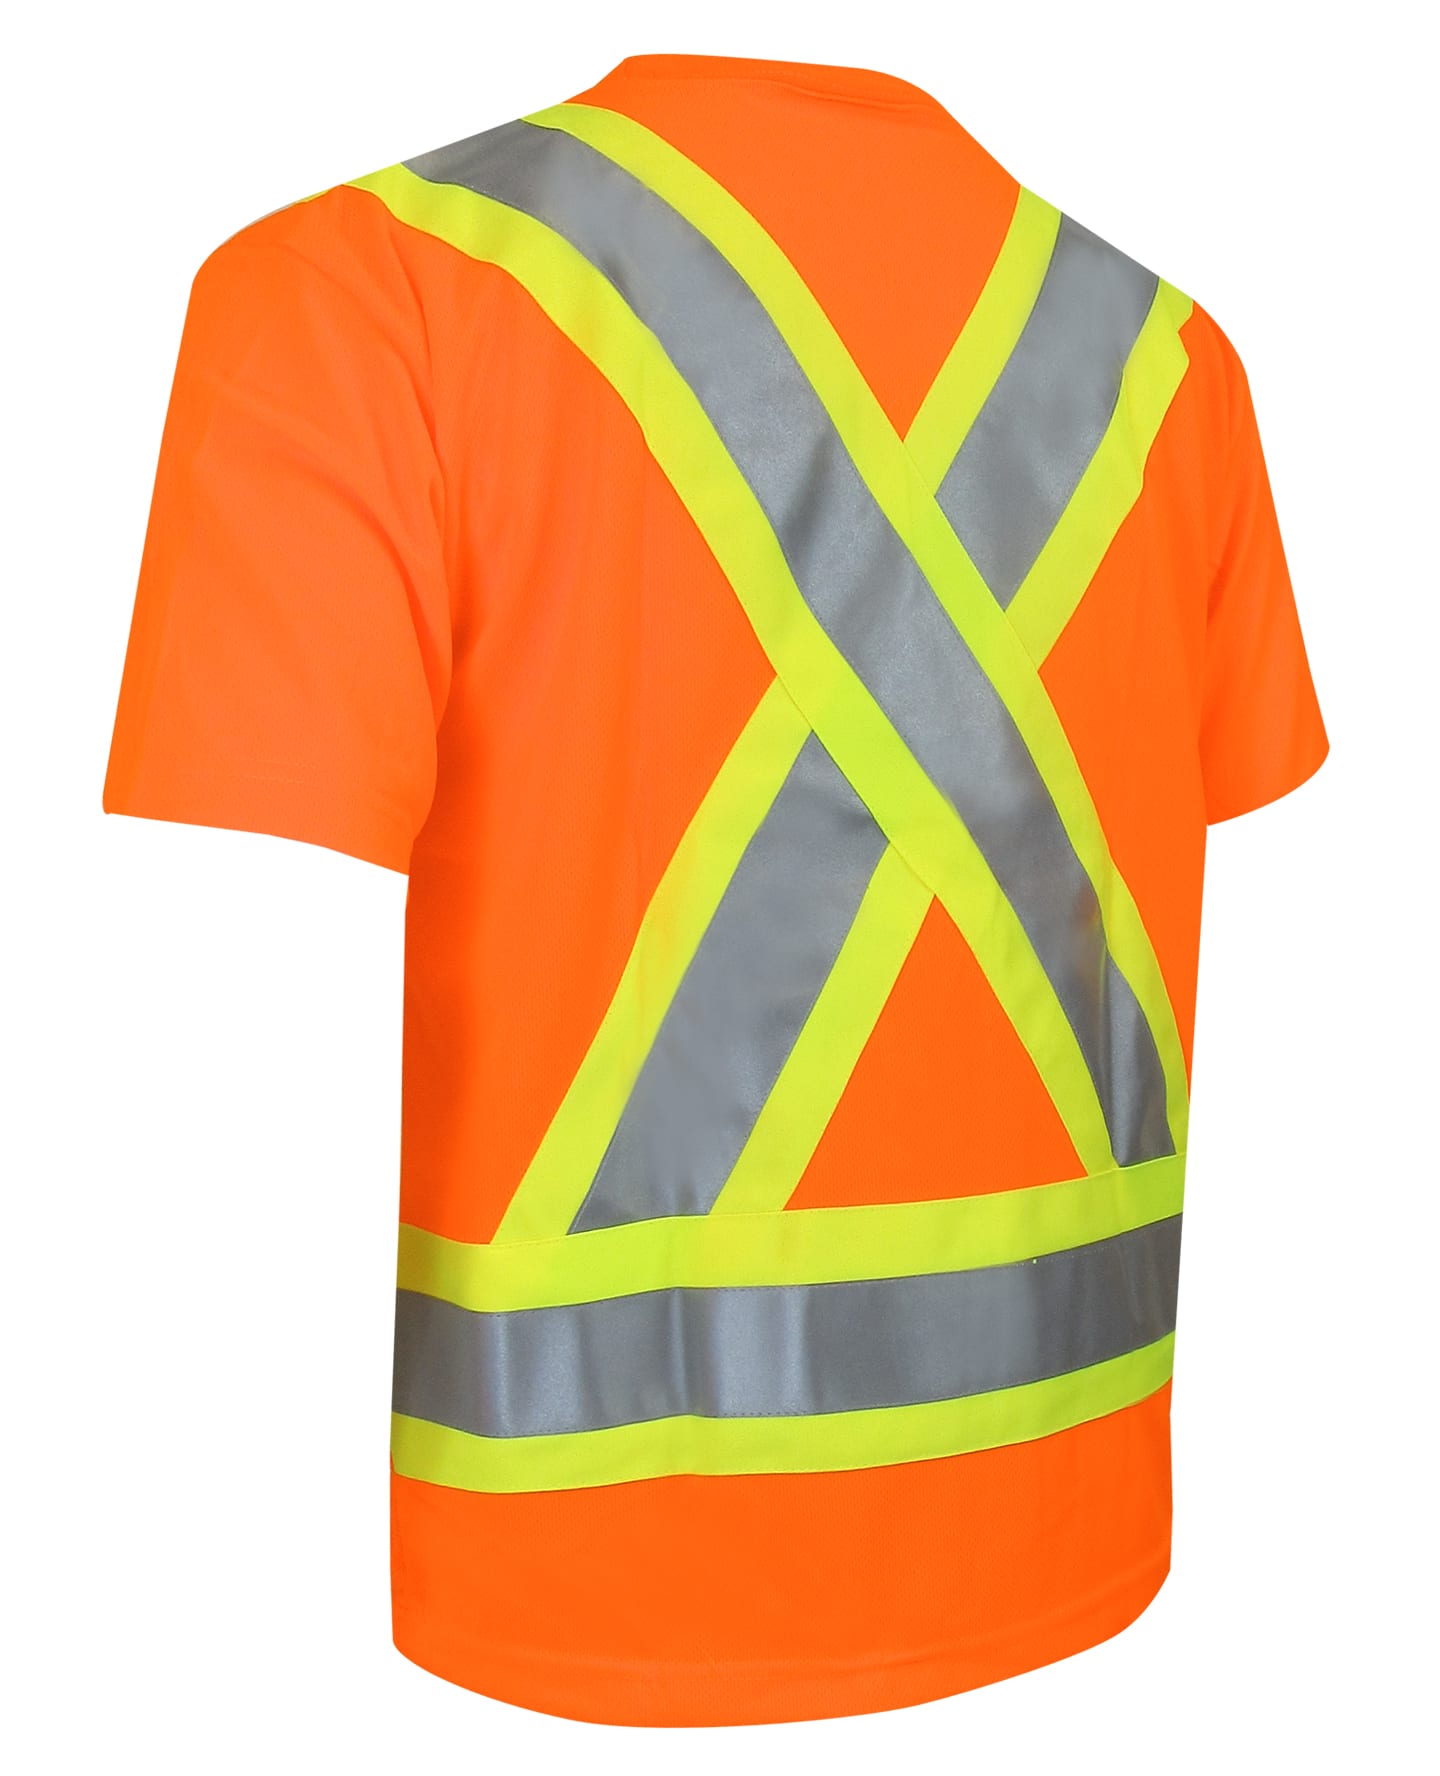 T-shirt da 10-662R ad alta visibilità per uomini (dimensioni regolari)